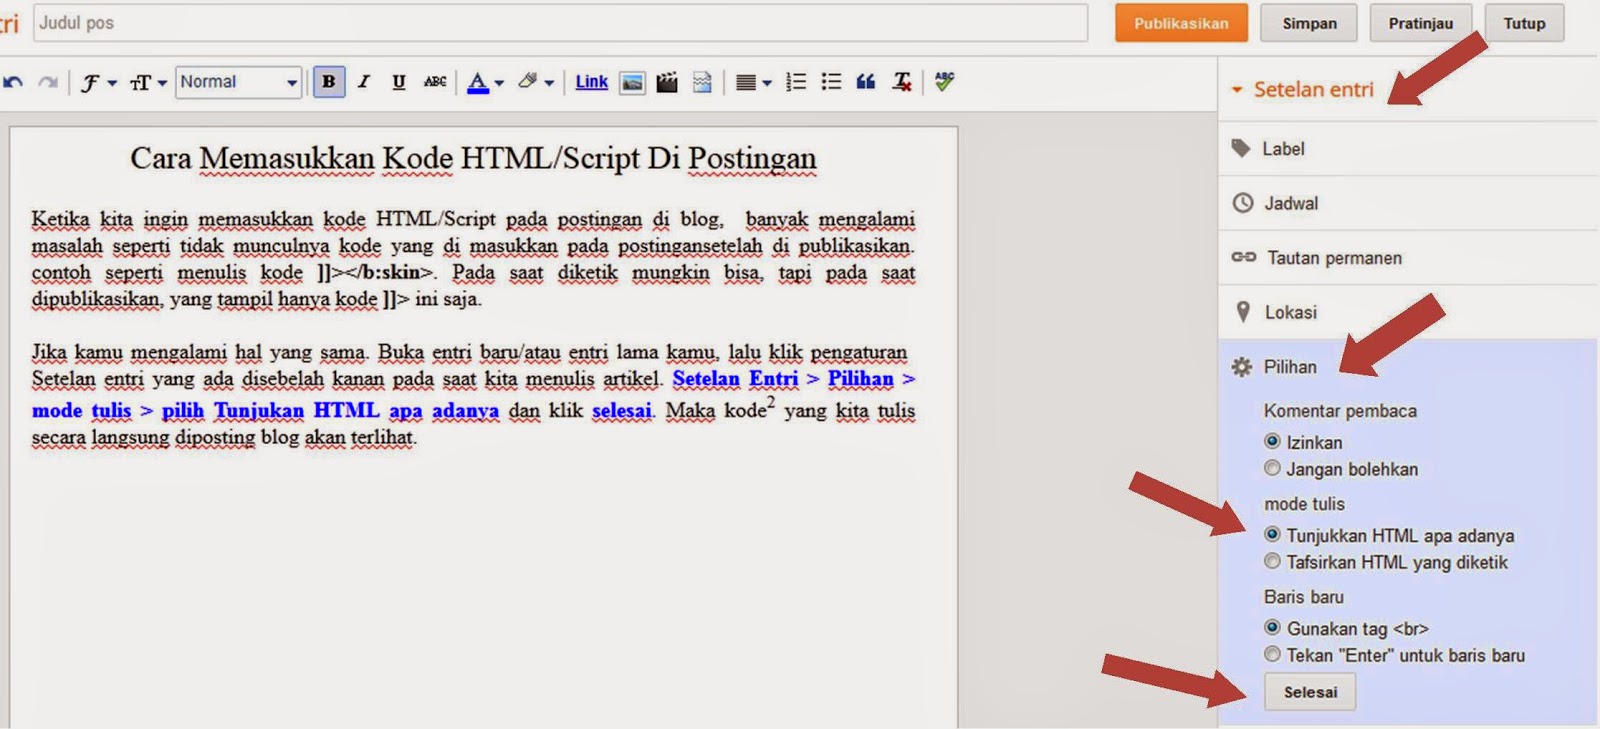 Cara Memasukkan Kode HTML/Script Di Postingan ~ Emperor Rudi